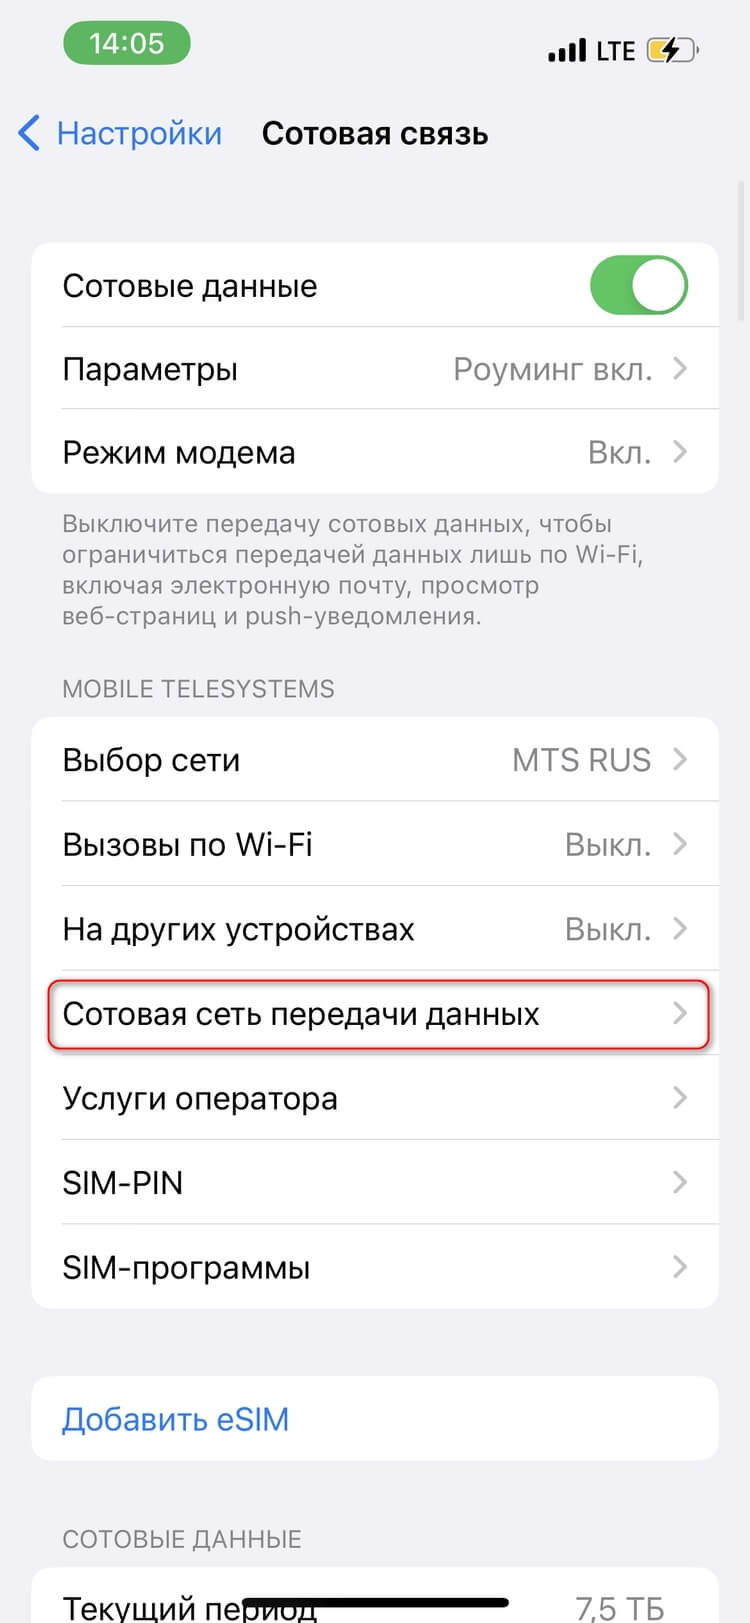 Как настроить iPhone с SIM-картой МТС для корректной работы мобильного интернета в международном роуминге